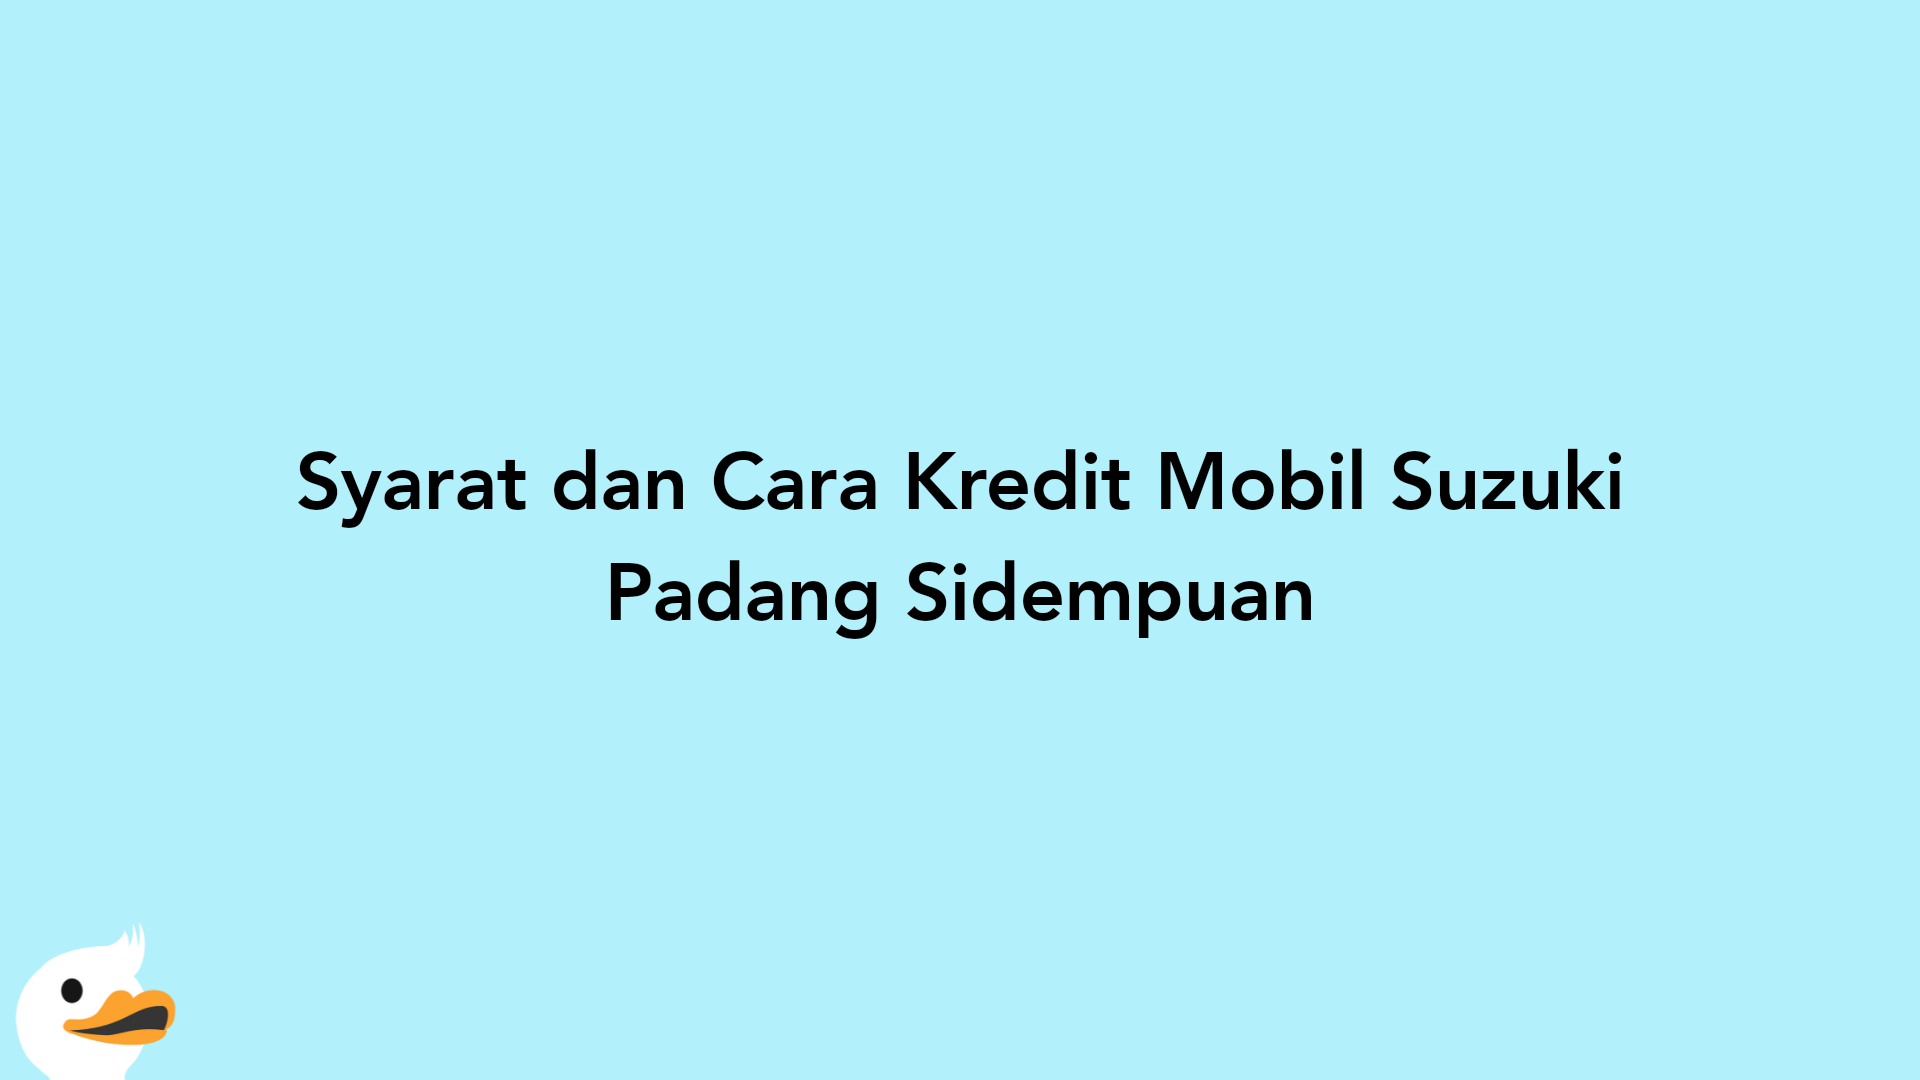 Syarat dan Cara Kredit Mobil Suzuki Padang Sidempuan